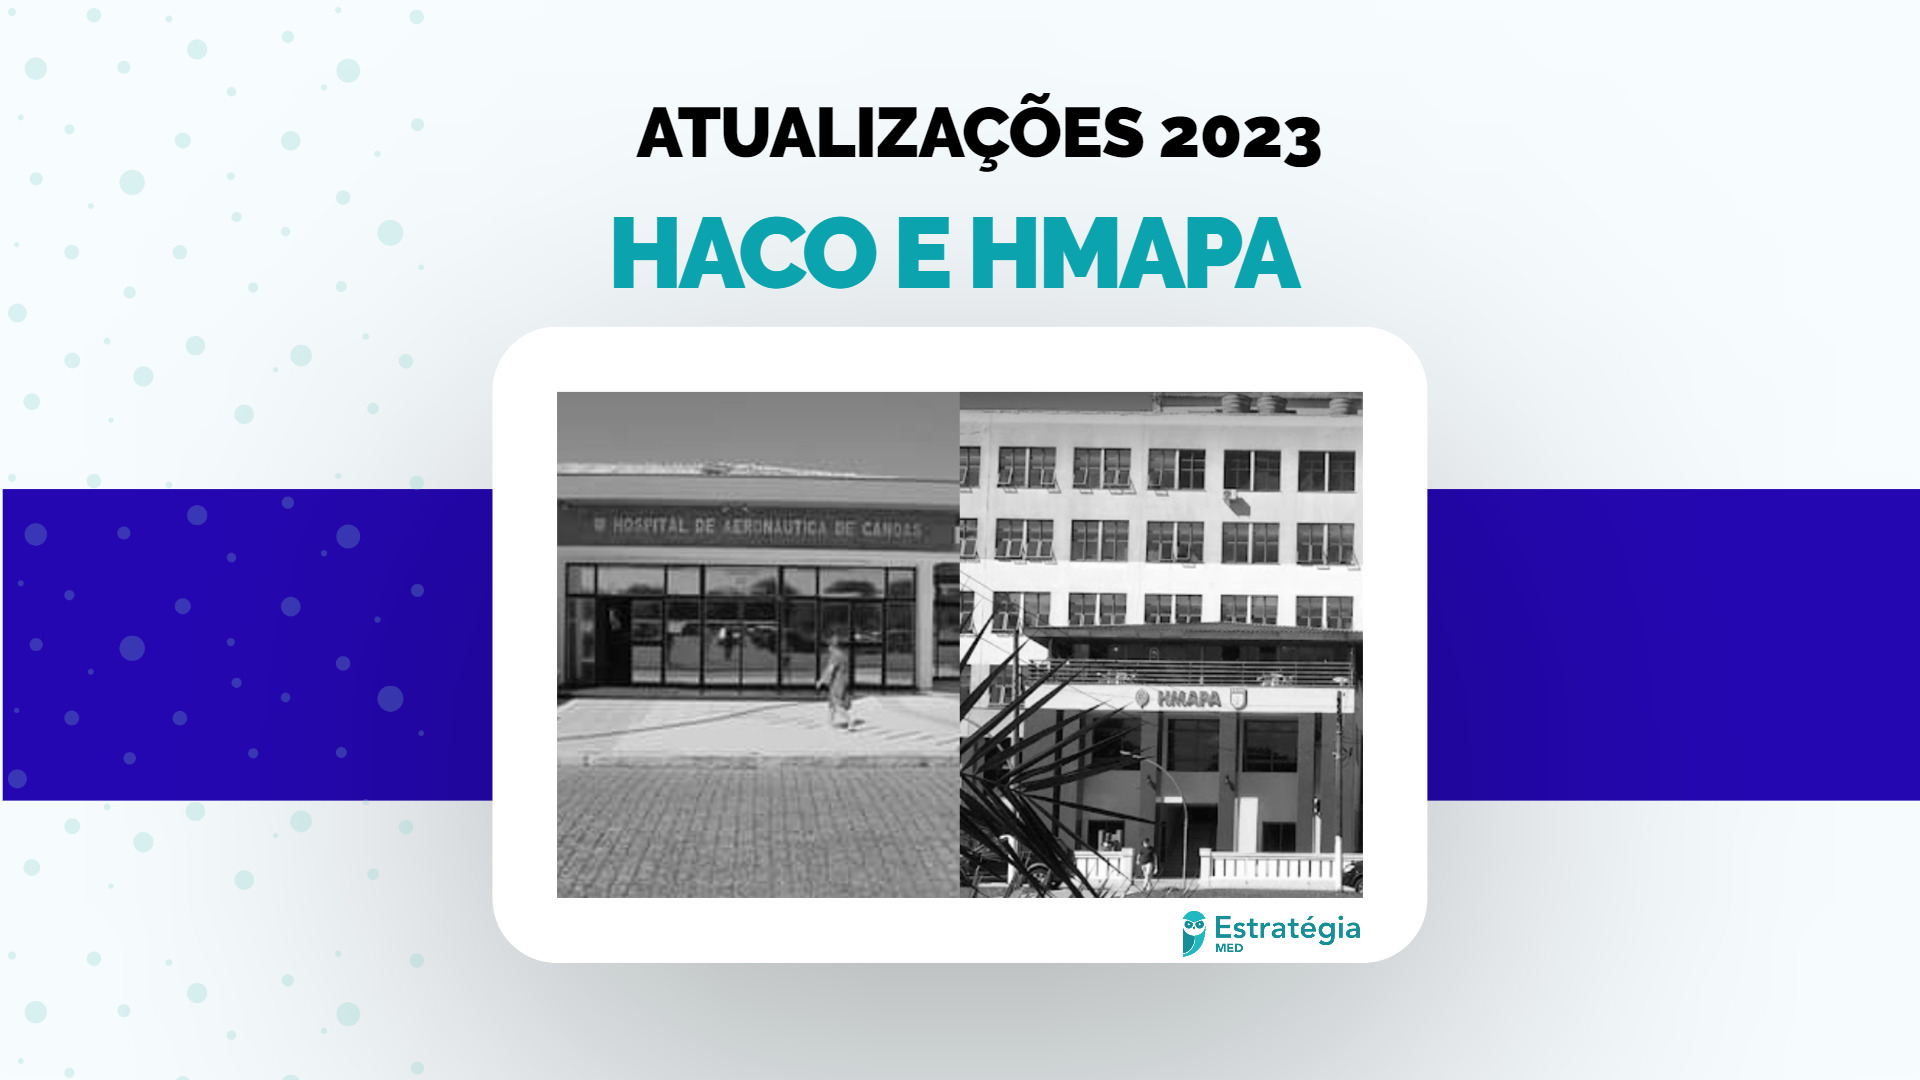 HACO e HMAPA 2023: está aberto o prazo de solicitação de isenção da taxa